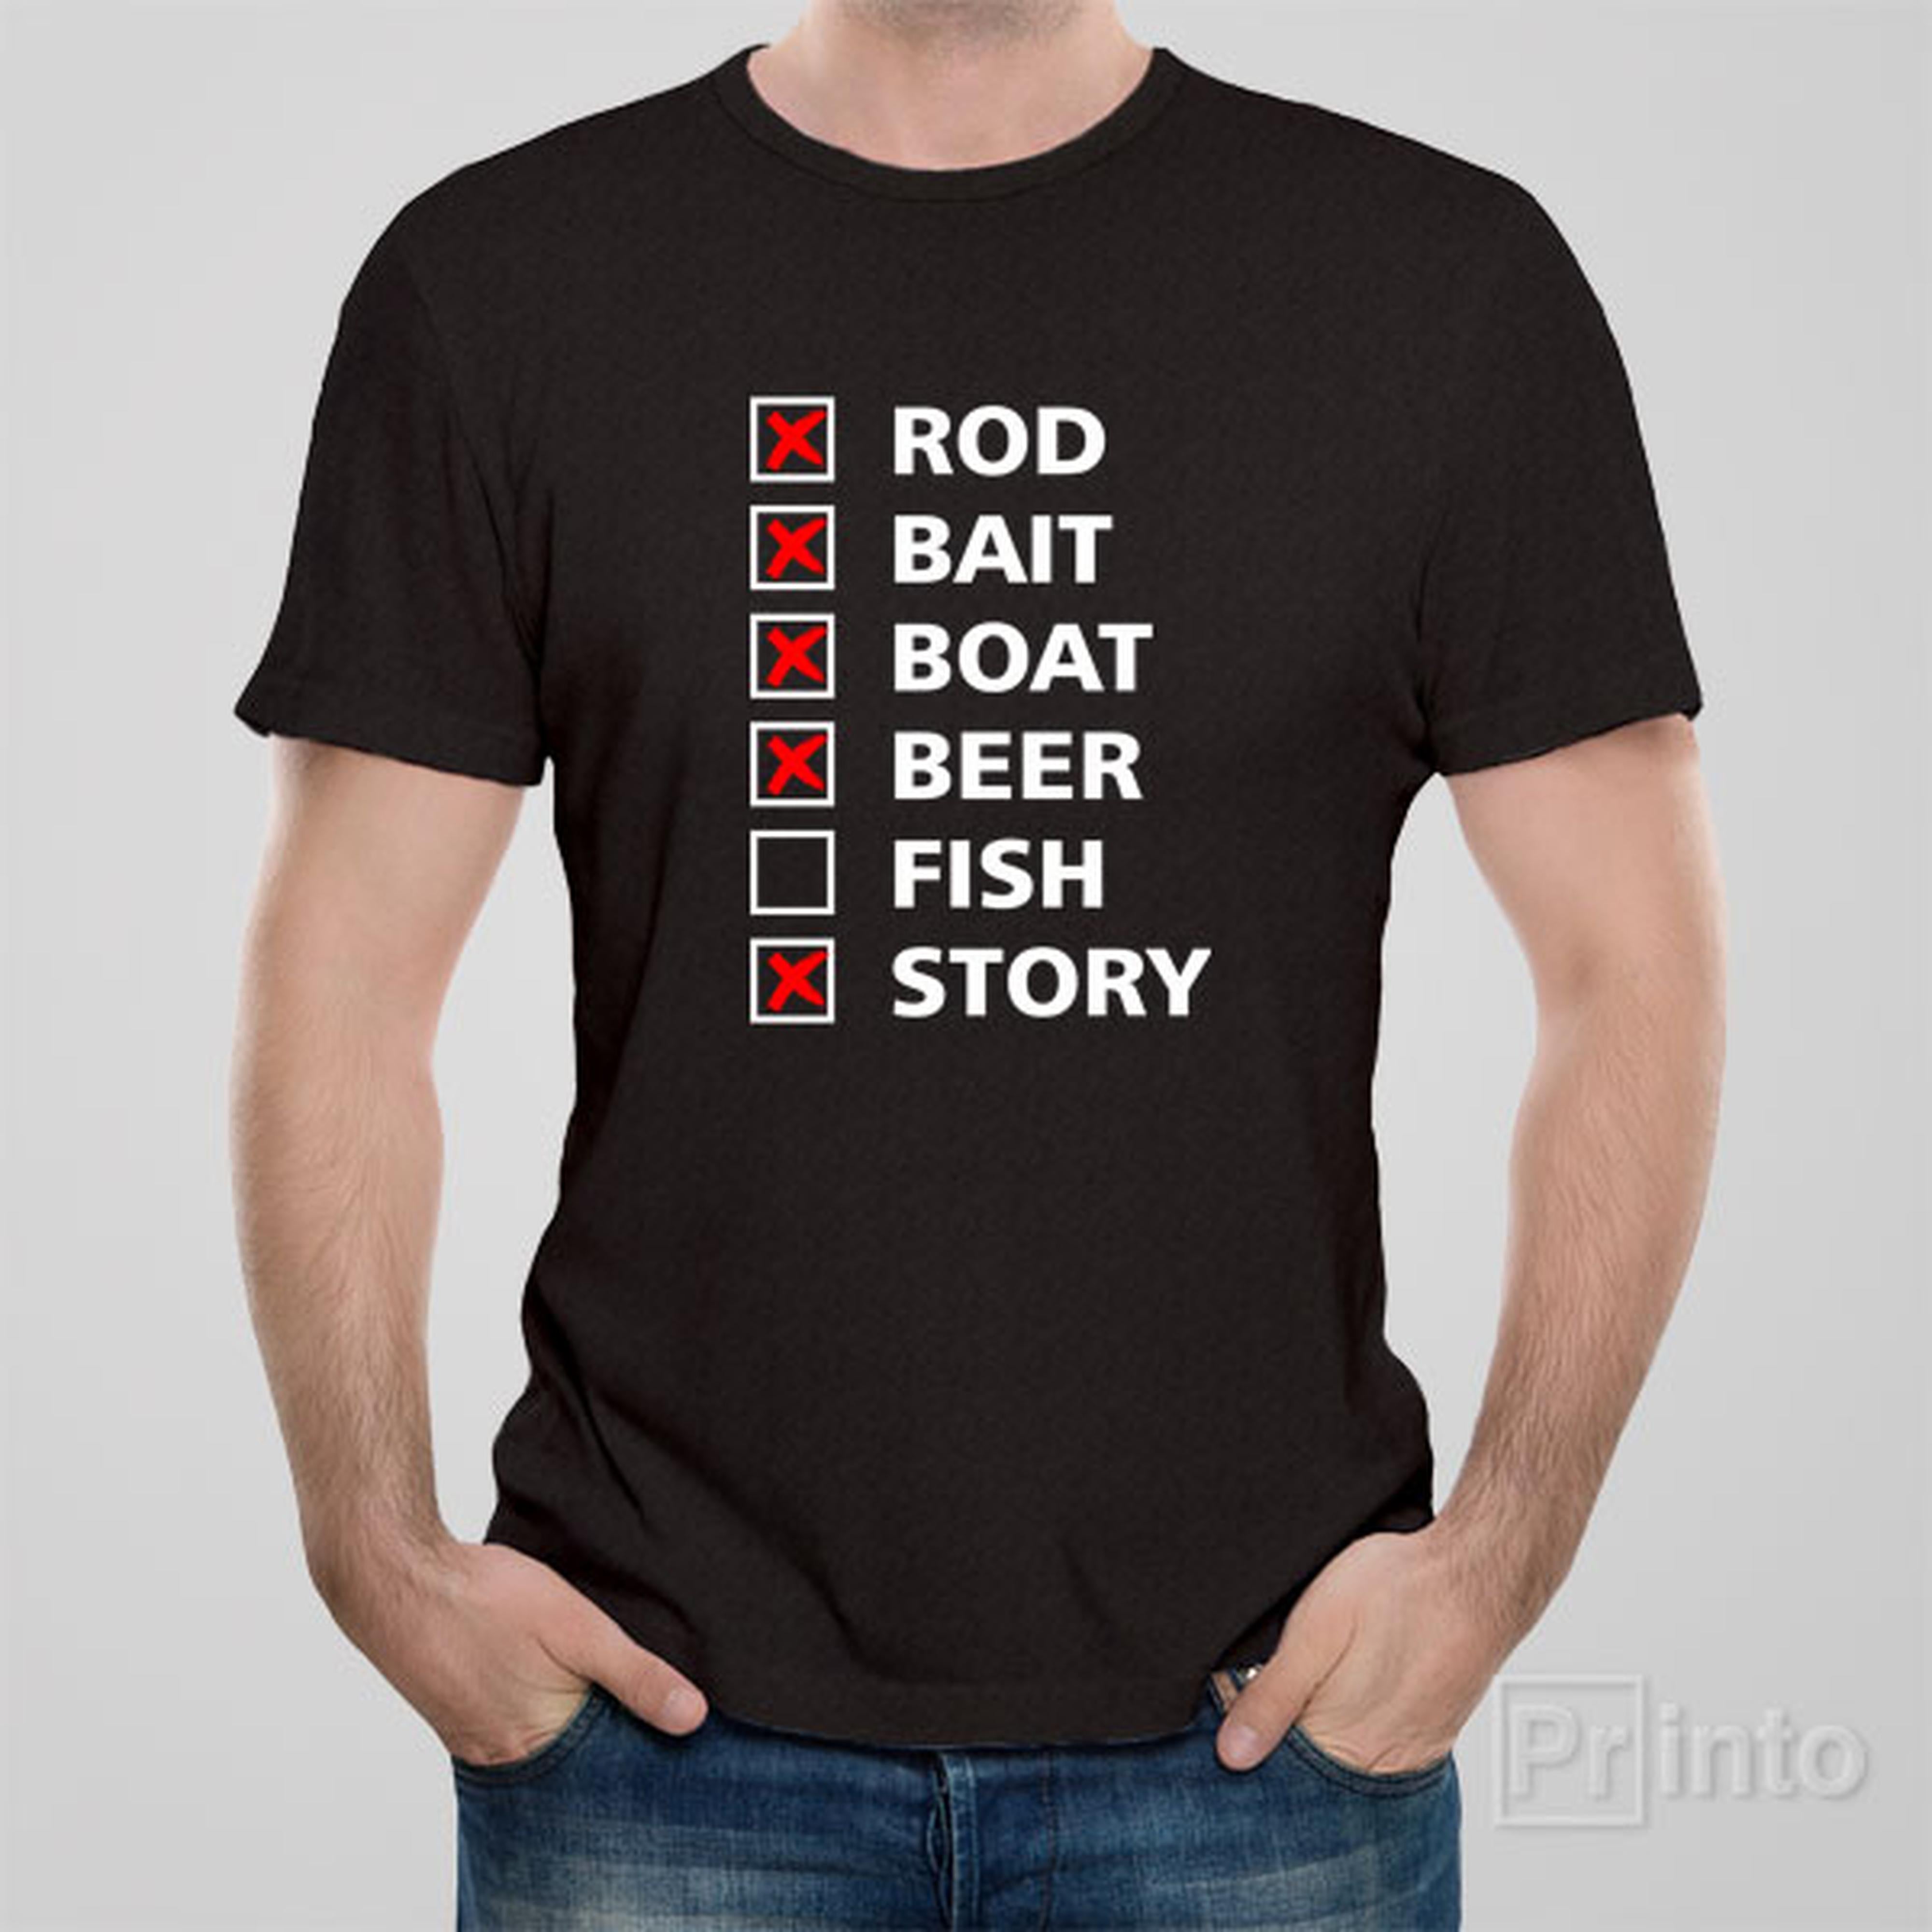 fishing-checklist-t-shirt